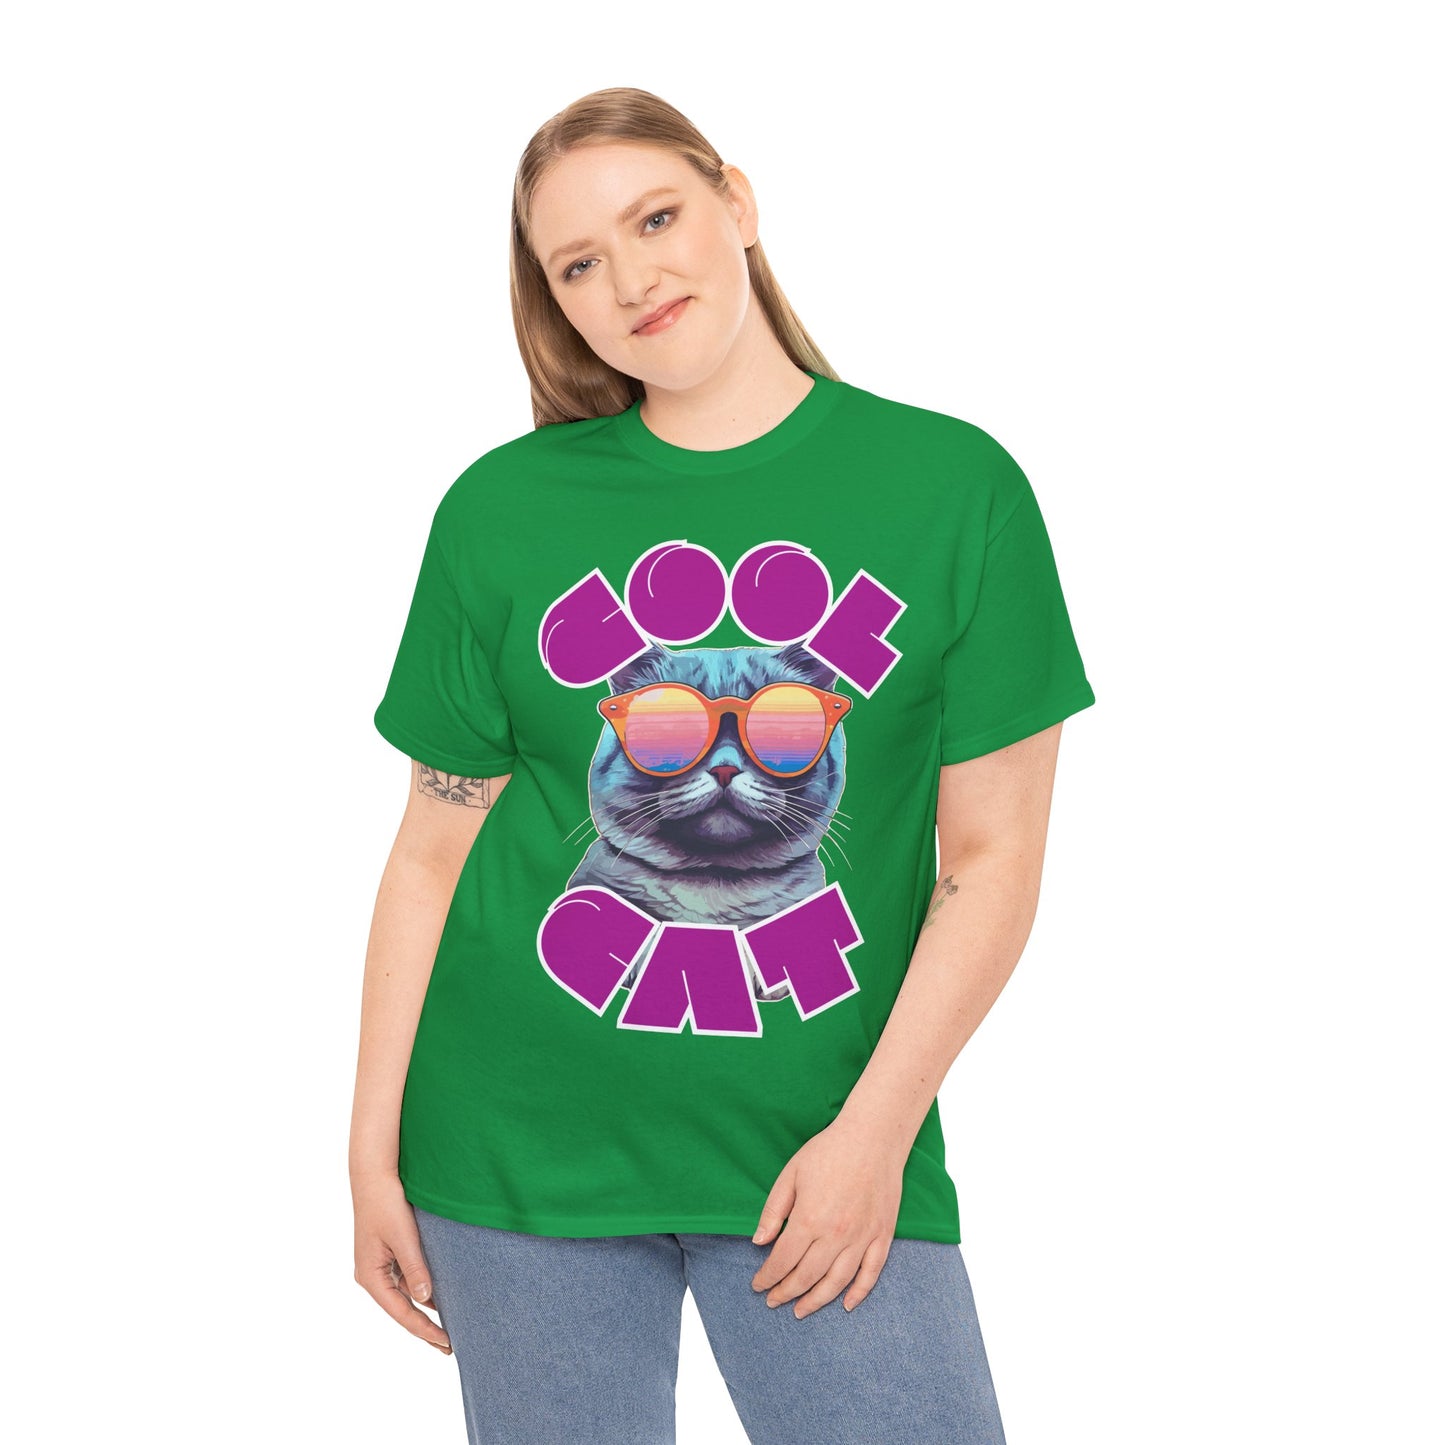 Unisex Heavy Cotton Graphic design (Cool Cat) T-shirt